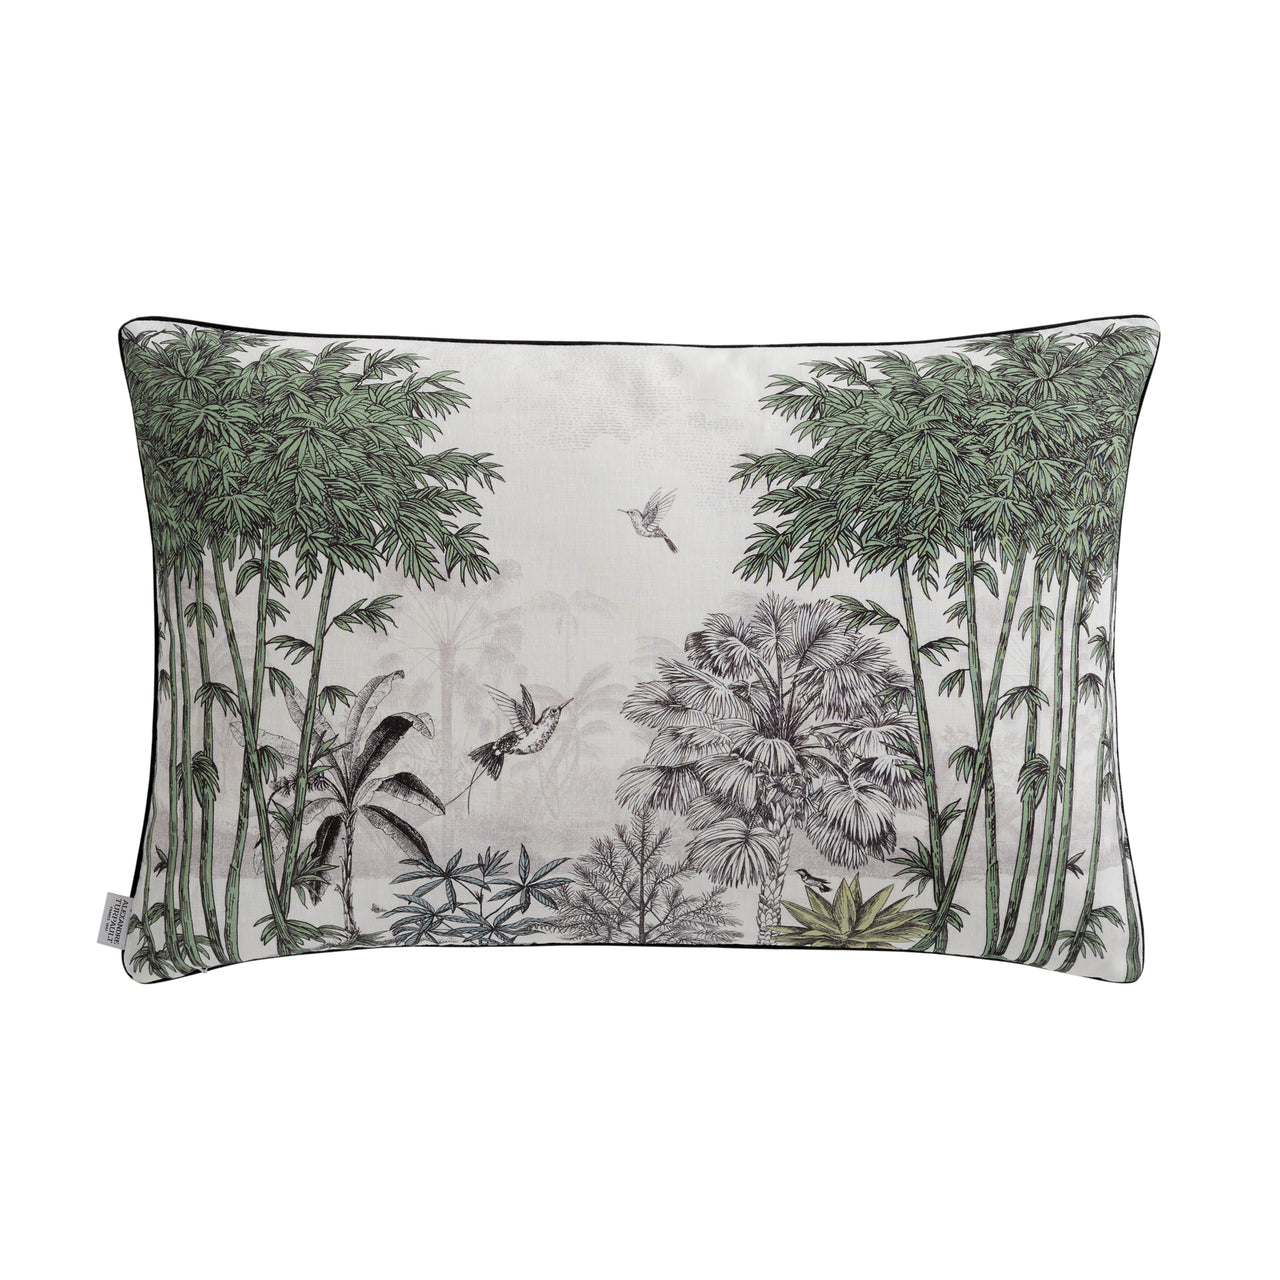 l’île aux oiseaux cushion cover by alexandre turpault on adorn.house